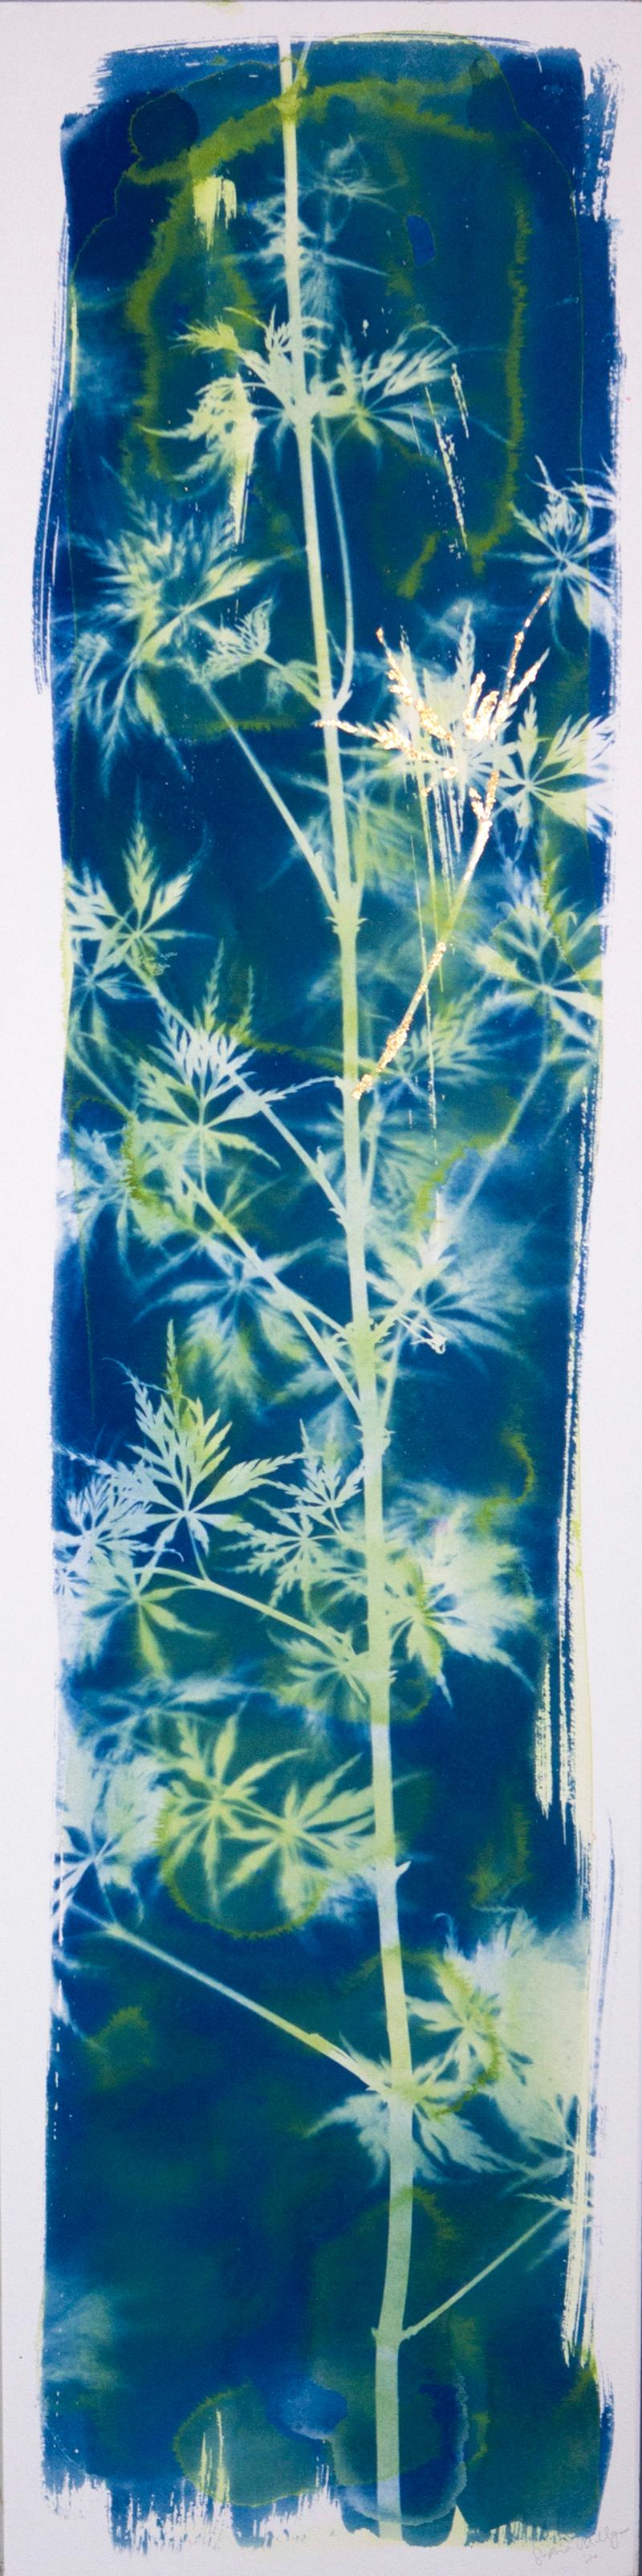 Le saphir renaît ! Feuilles d'érable contemporaines en or bleu et vert naturel - Painting de Sophia Milligan